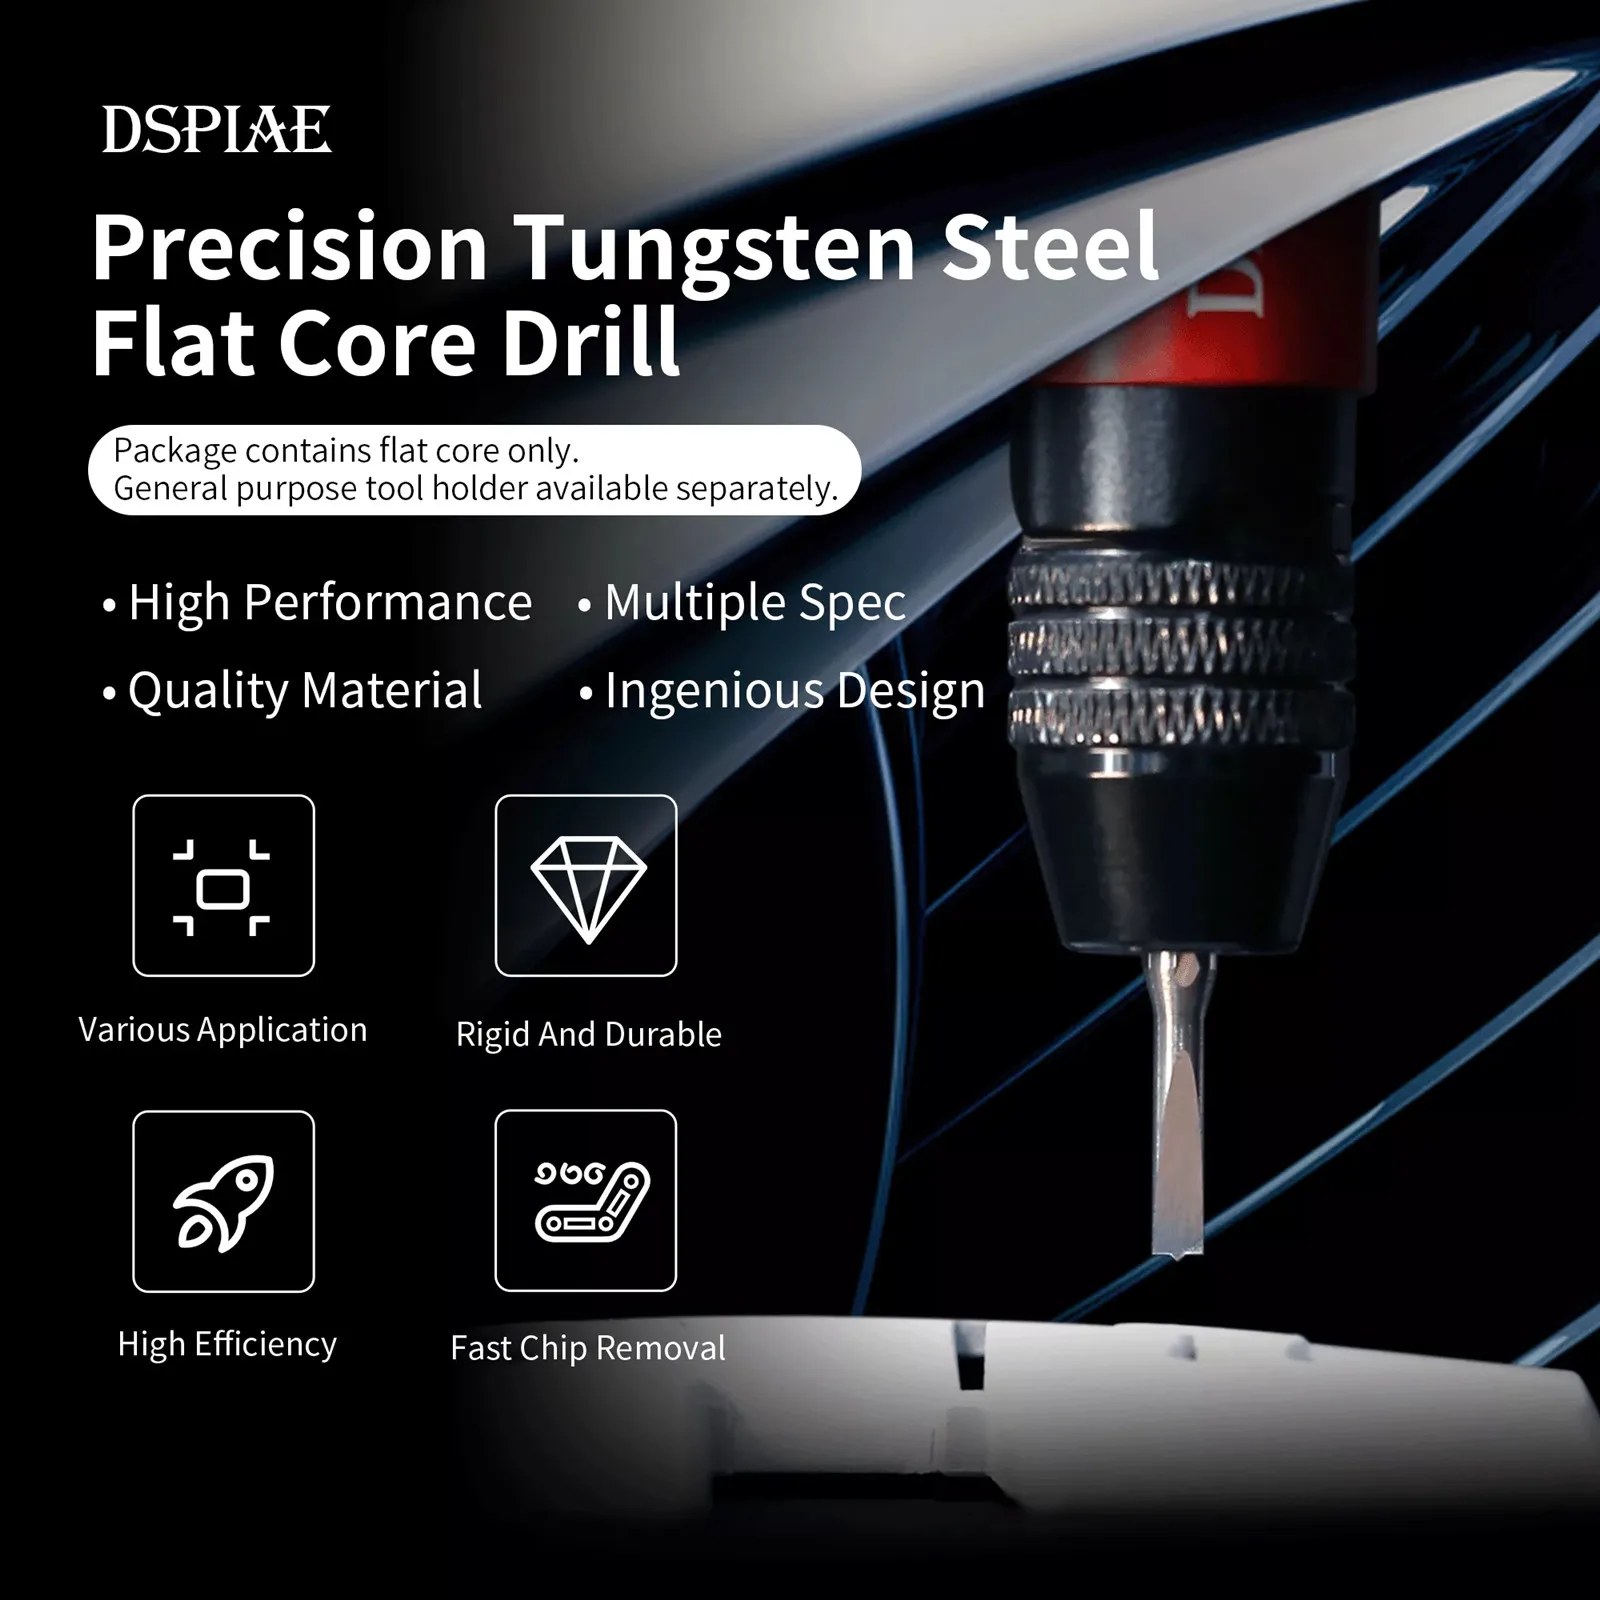 

DSPIAE FB Precision Tungsten Steel Flat Core Drill